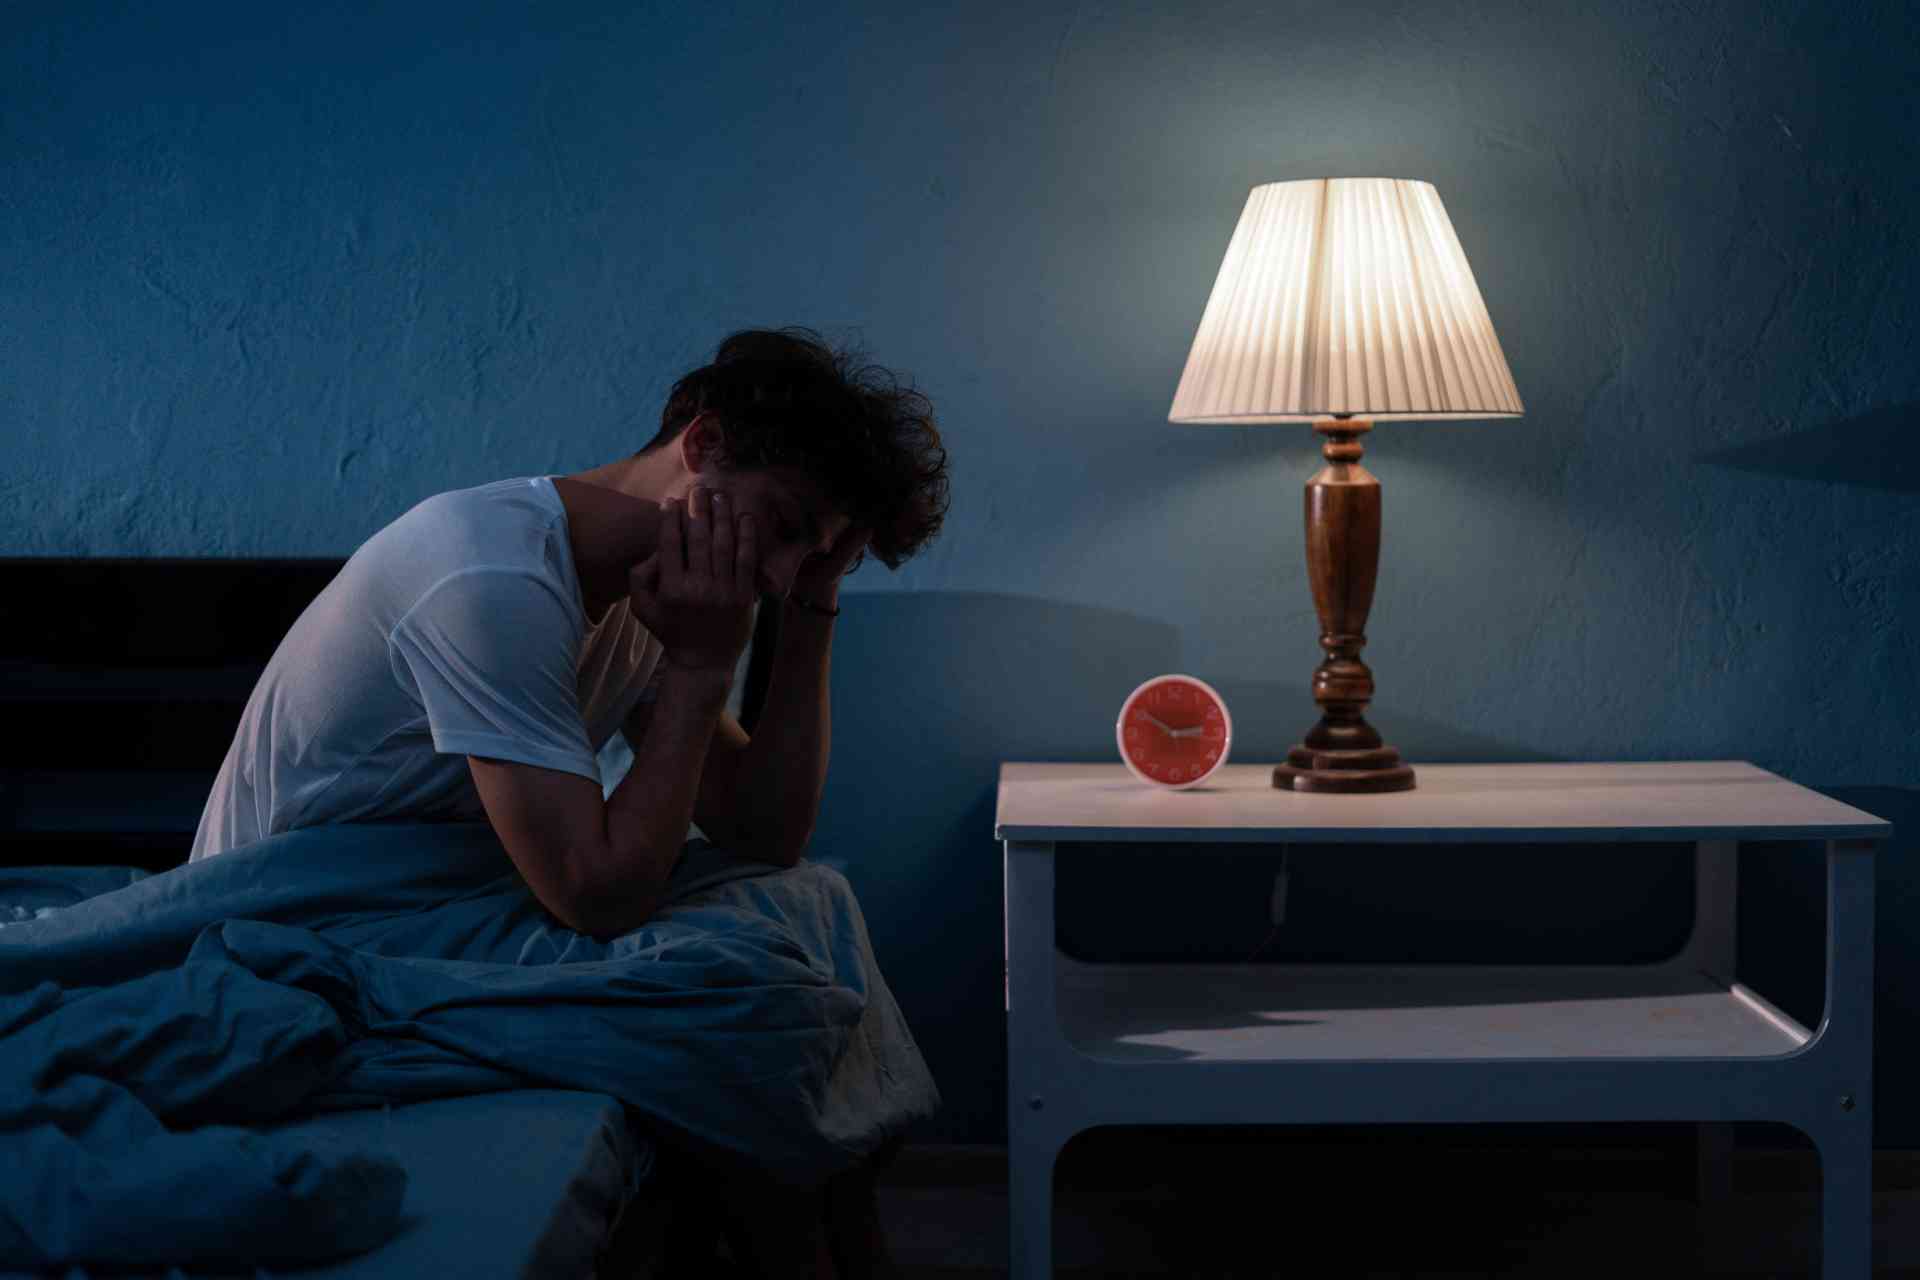 sintomas-de-ansiedade-noturna-como-identificar-e-tratar-para-dormir-e-viver-melhor